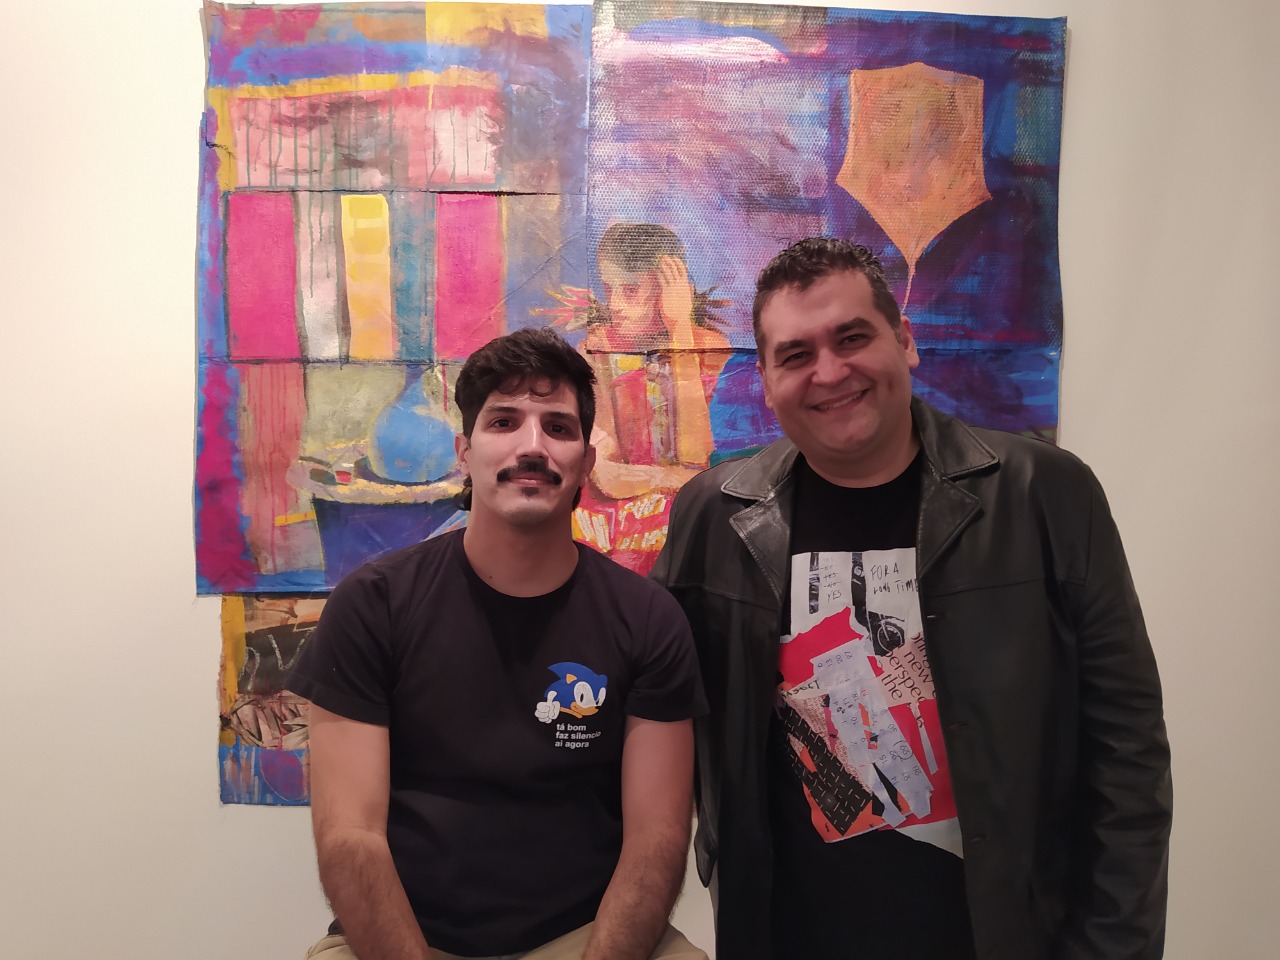 Wilson Neto e Daniel Chastinet abrem nova exposição no Rio de Janeiro. Vem saber!